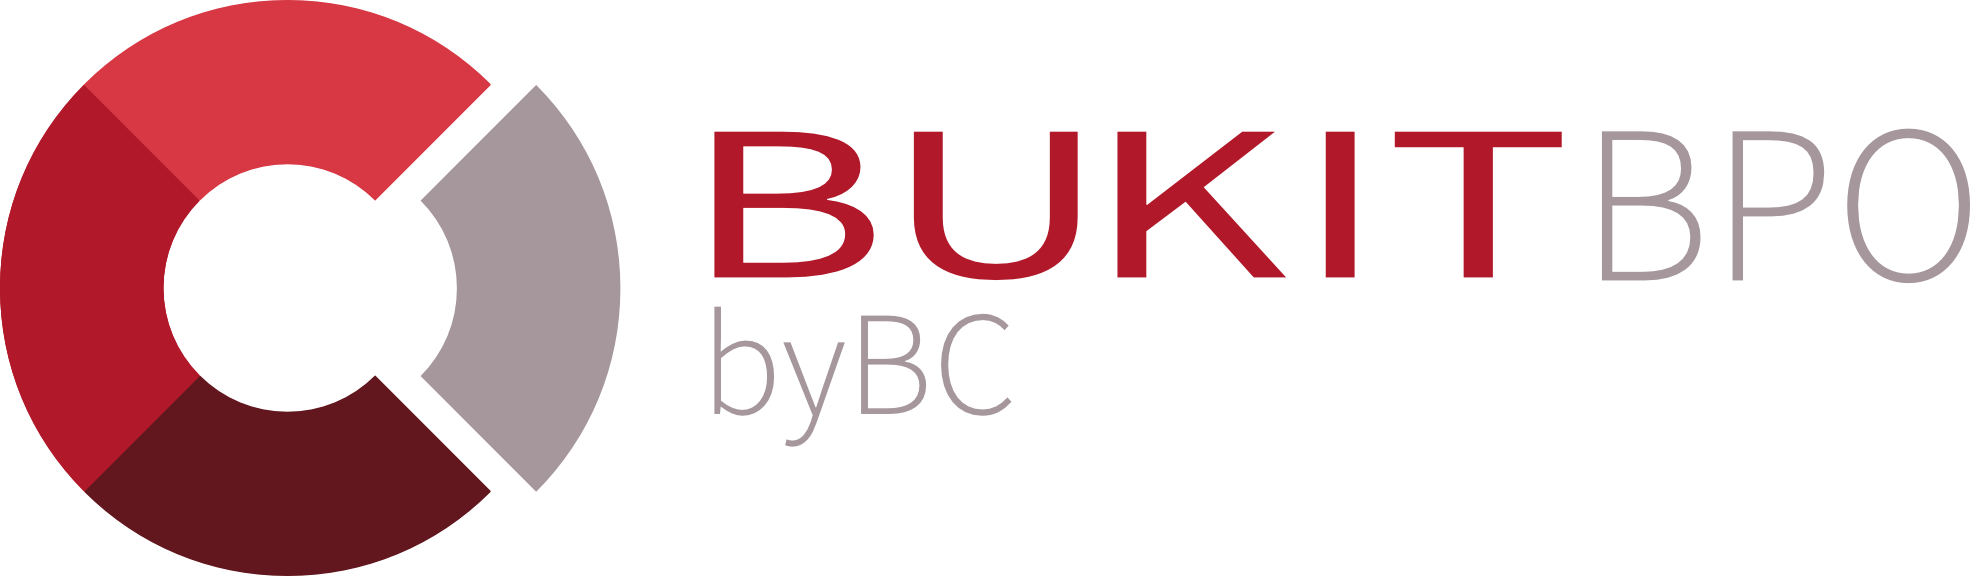 Bukit BPO – Empresa especialista en Business Process Outsourcing